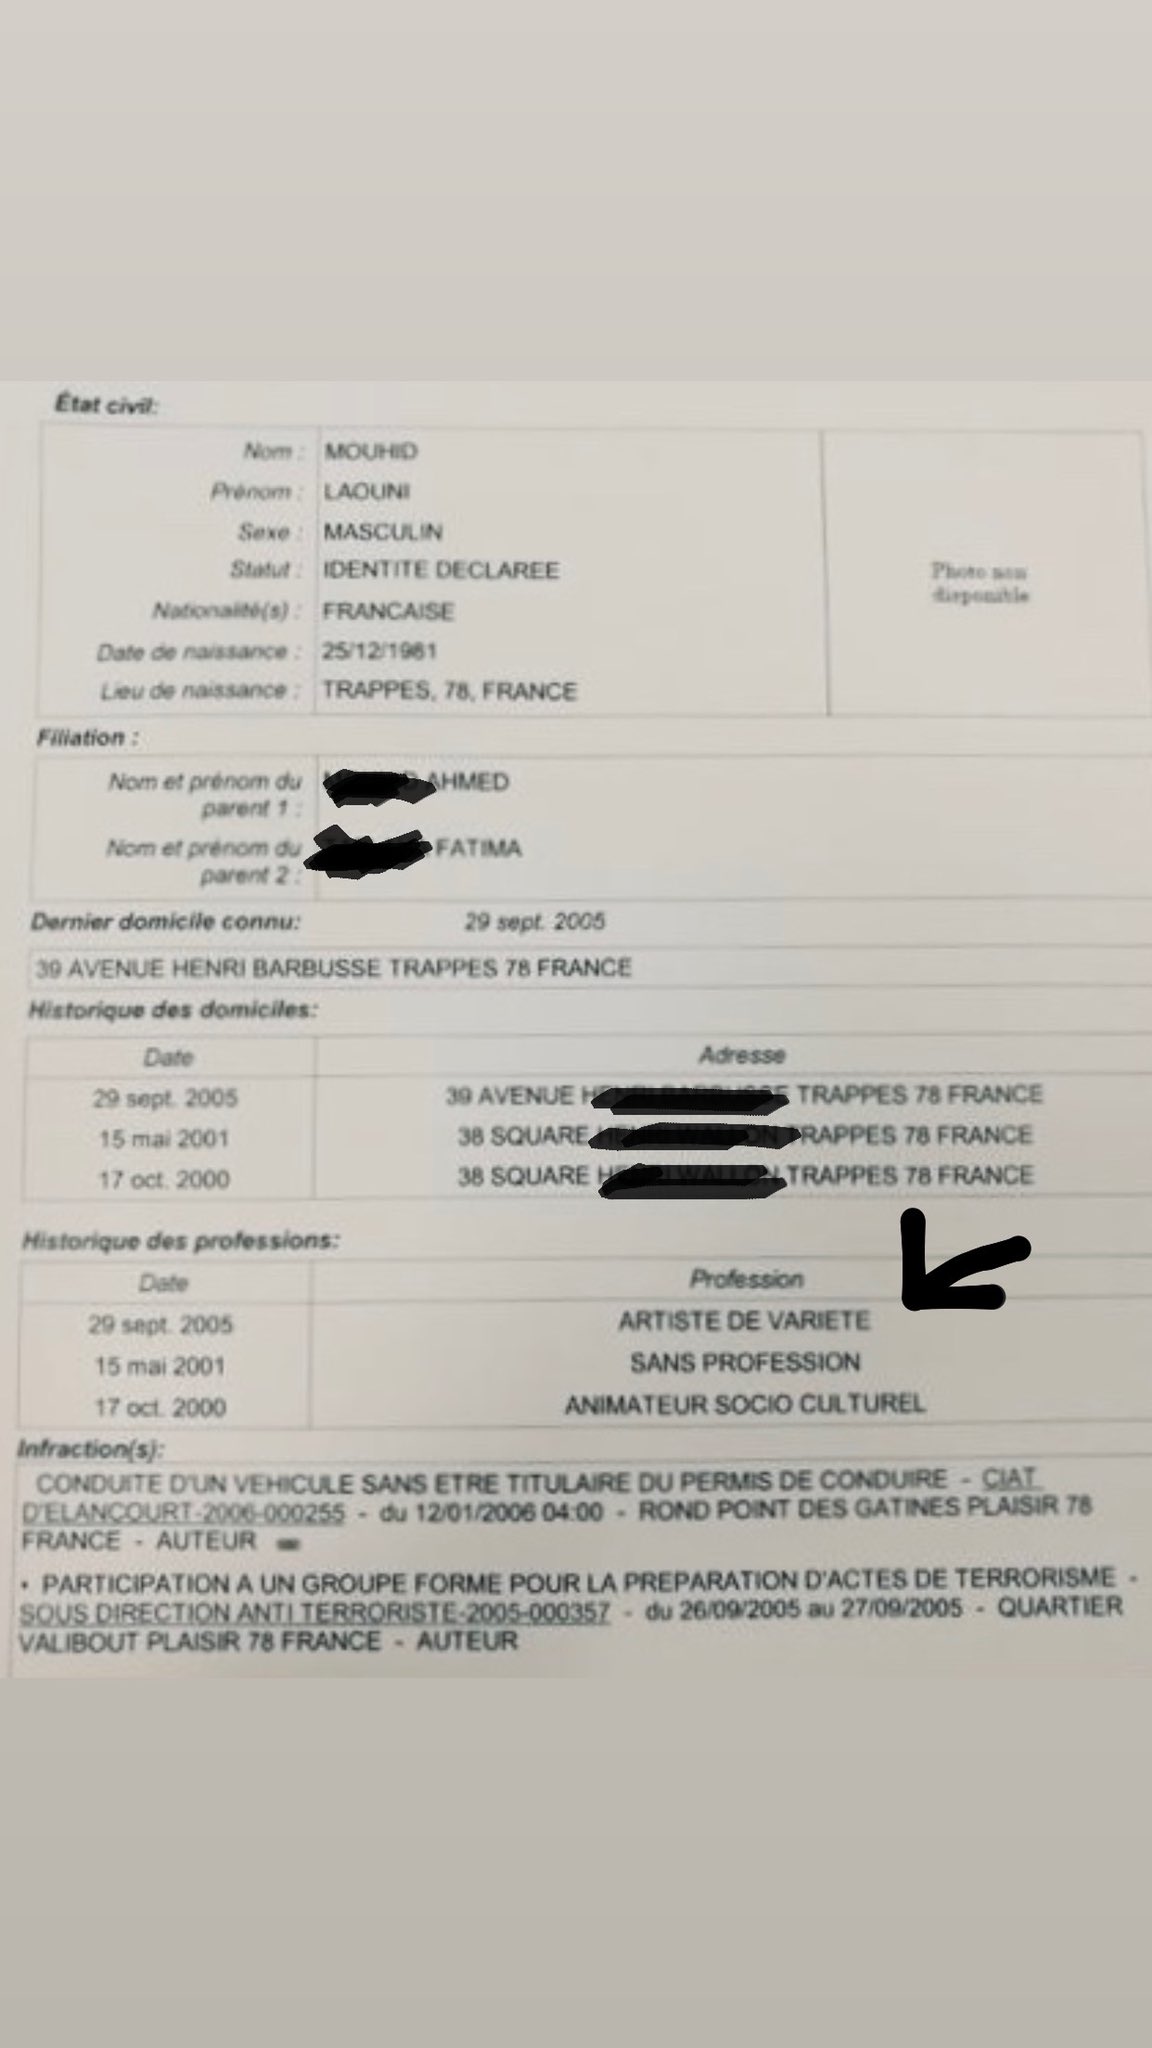 Booba clashe La Fouine en publiant son casier judiciaire, entre agressions sexuelles et terrorisme la liste est longue